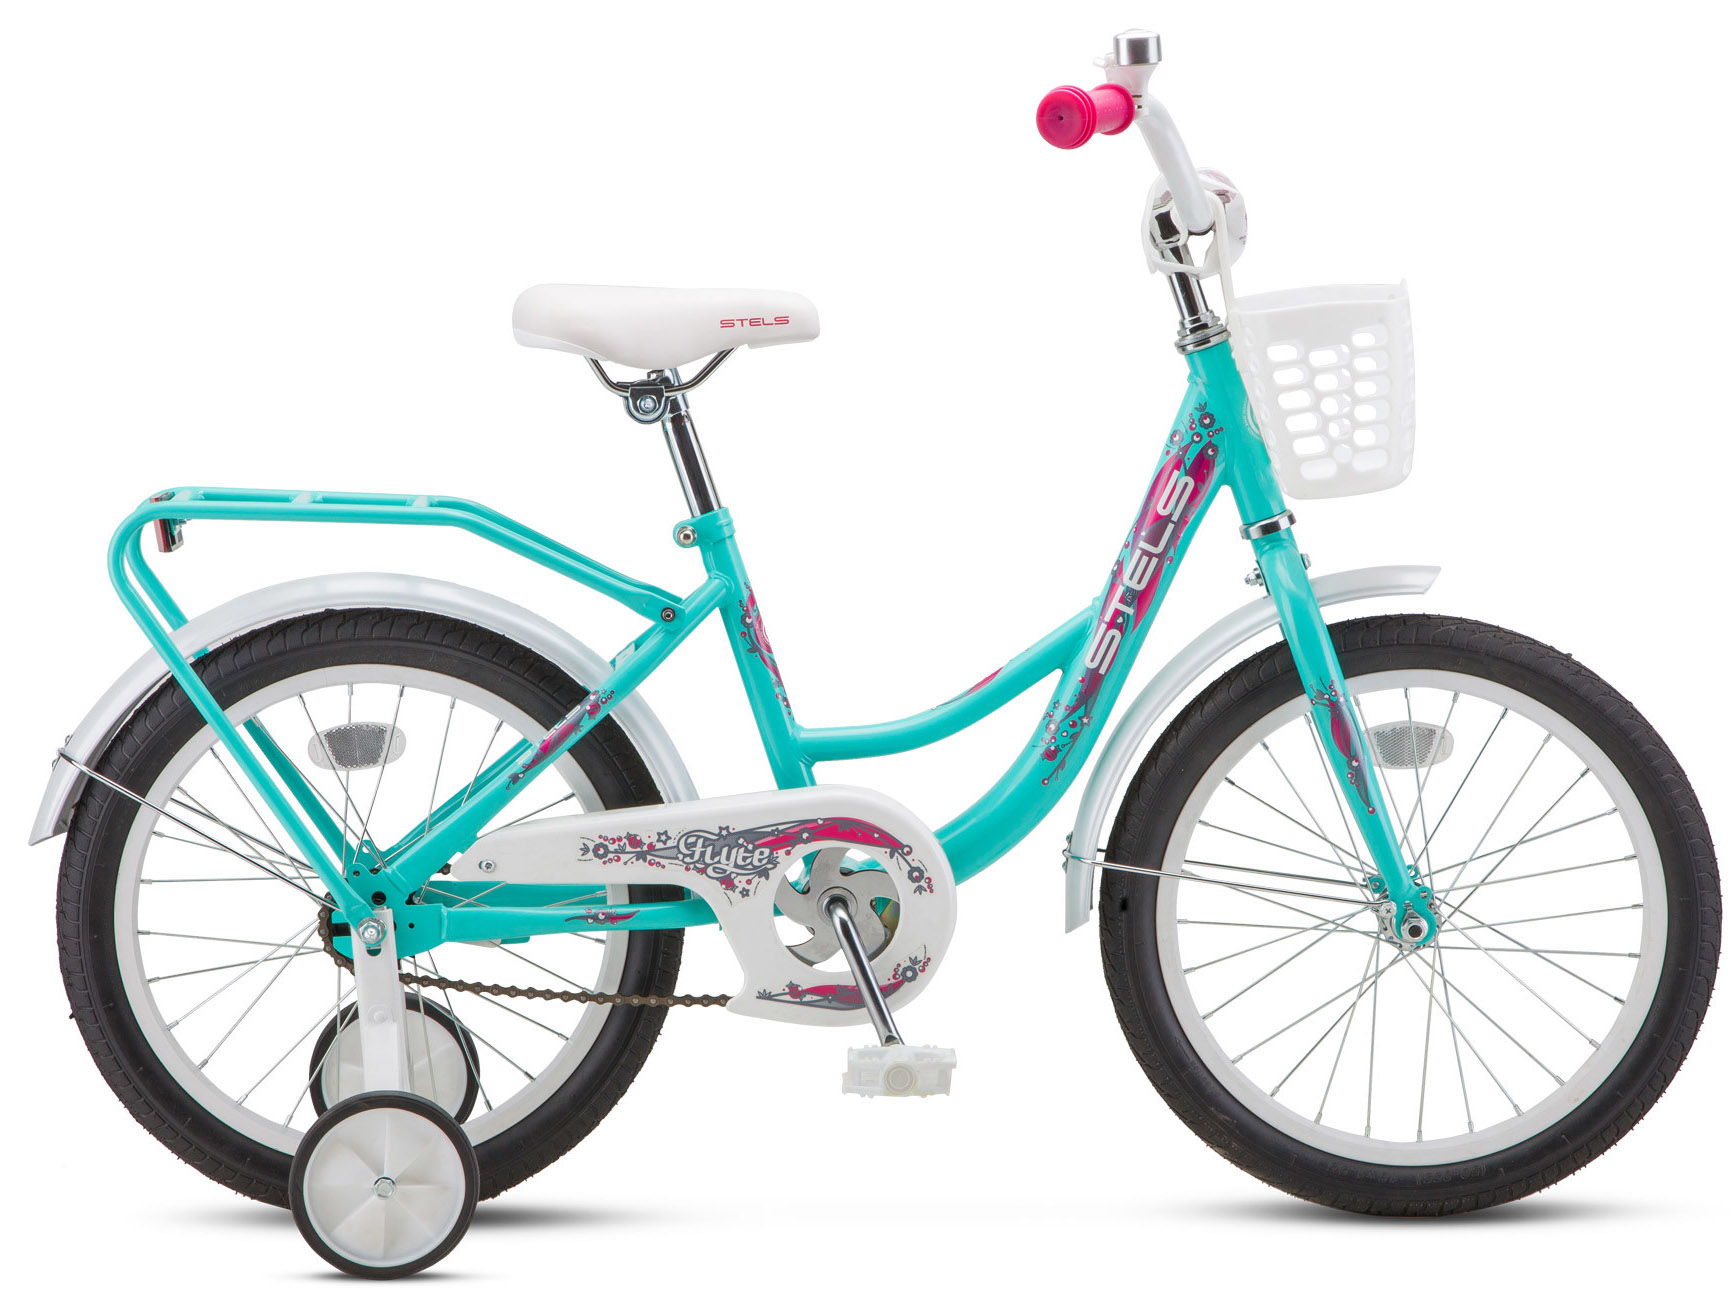  Отзывы о Трехколесный детский велосипед Stels Flyte Lady 16 (Z011) 2018